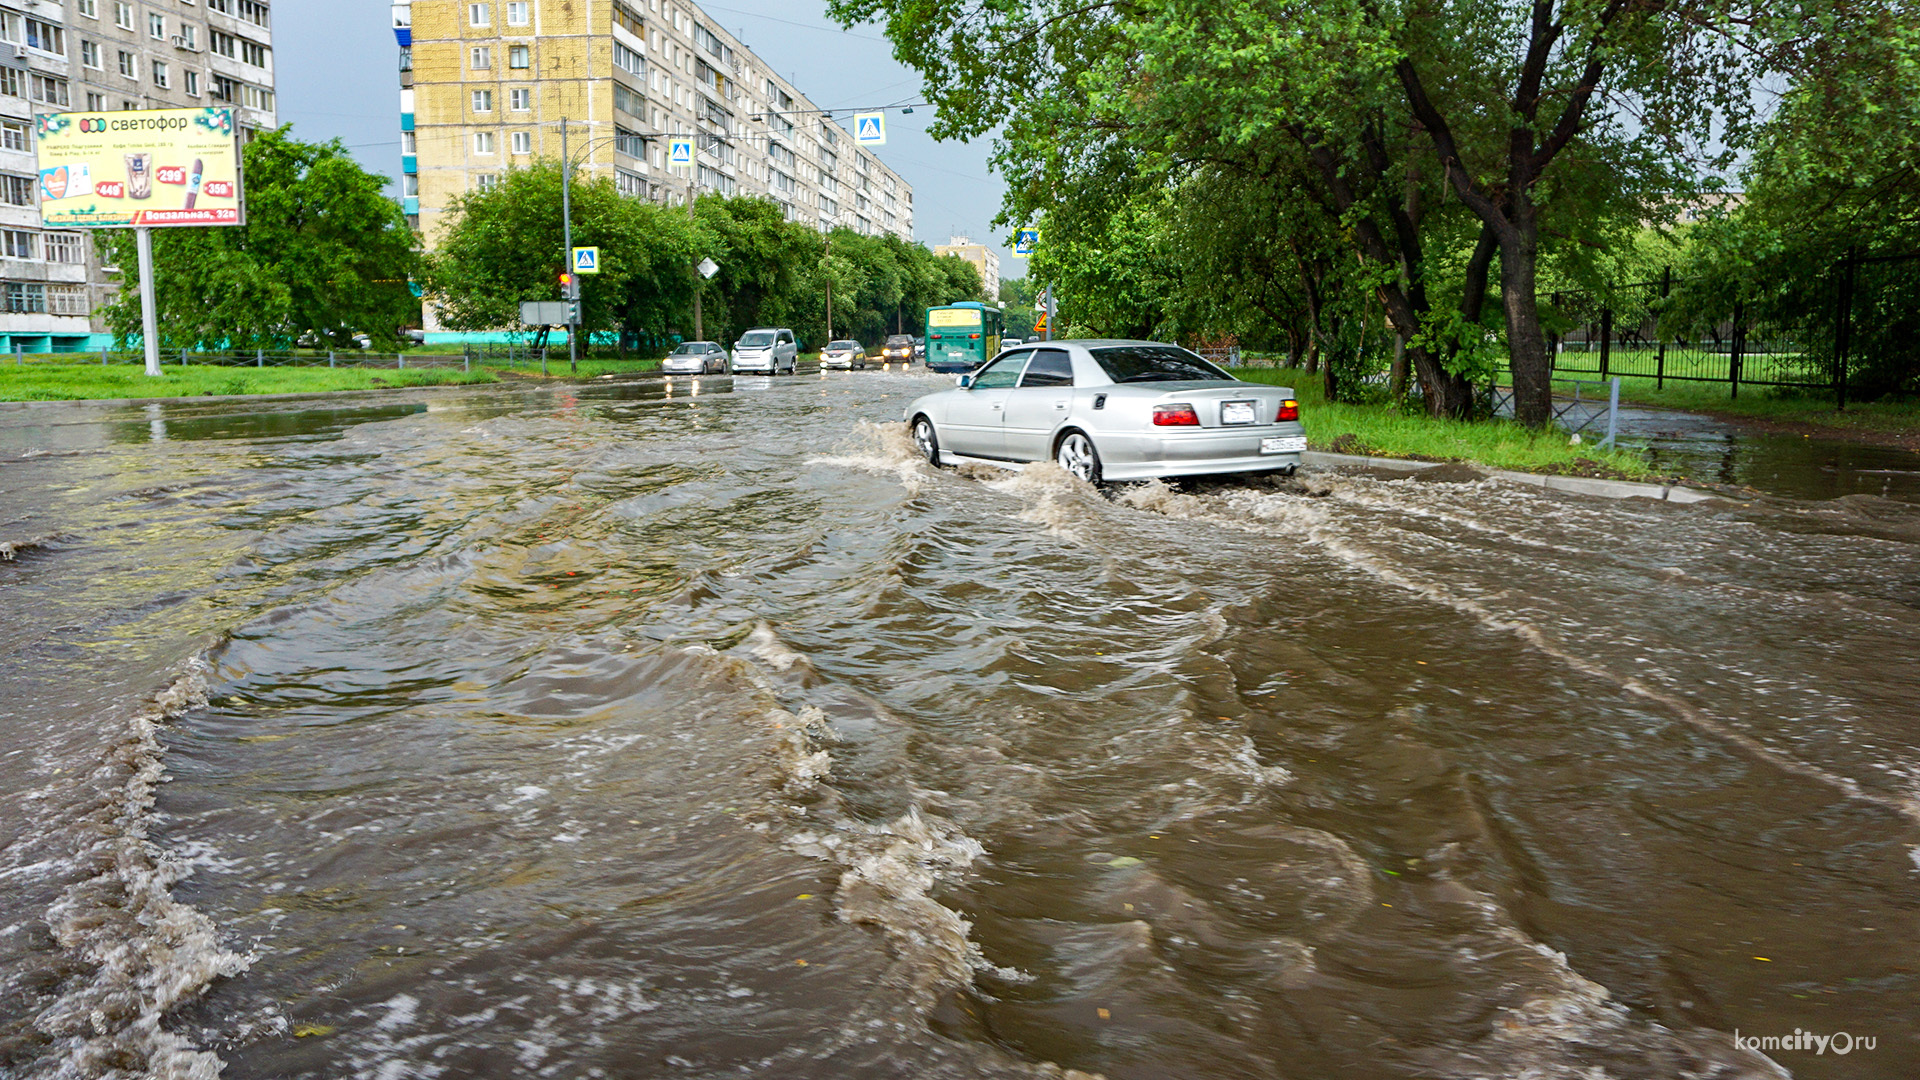 Циклон в городе: Улицы Комсомольска-на-Амуре традиционно подтопило, деревья повалило и провода пооборвало